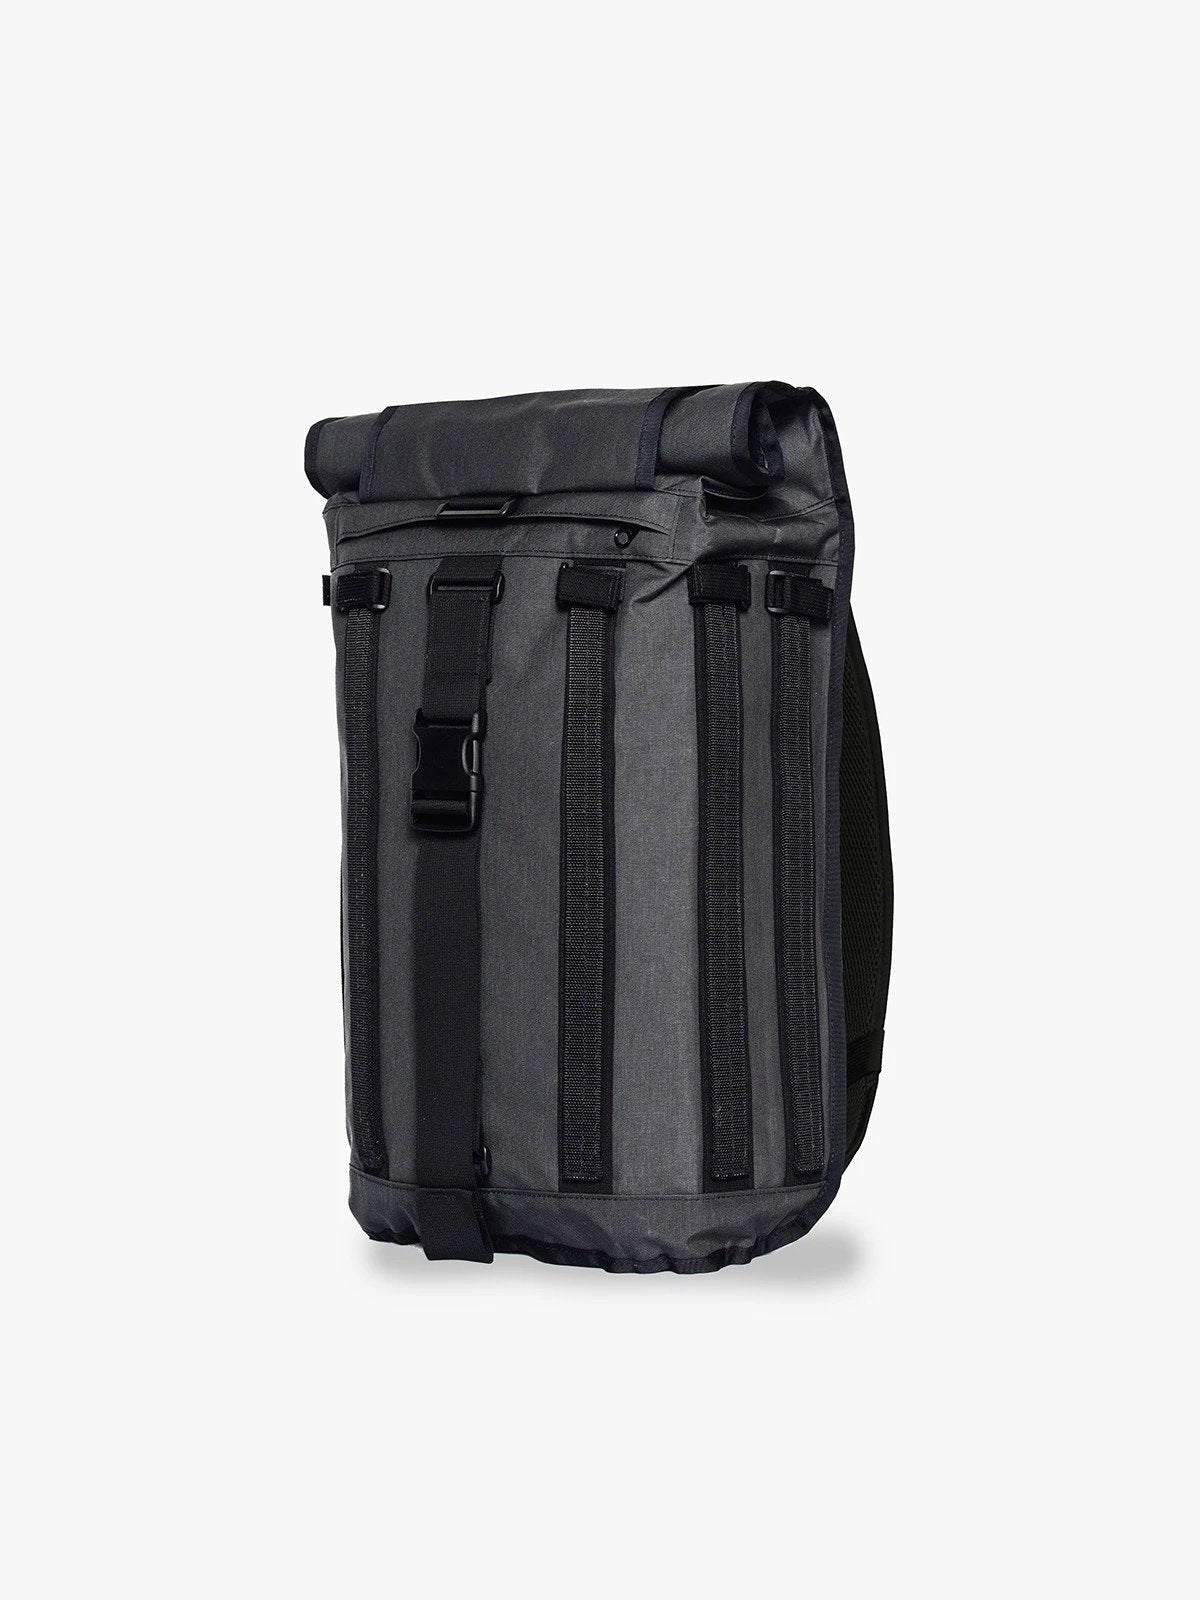 R6 Arkiv Field Pack 20L by Mission Workshop - Weersbestendige tassen & technische kleding - San Francisco & Los Angeles - Gebouwd om te weerstaan - Voor altijd gegarandeerd